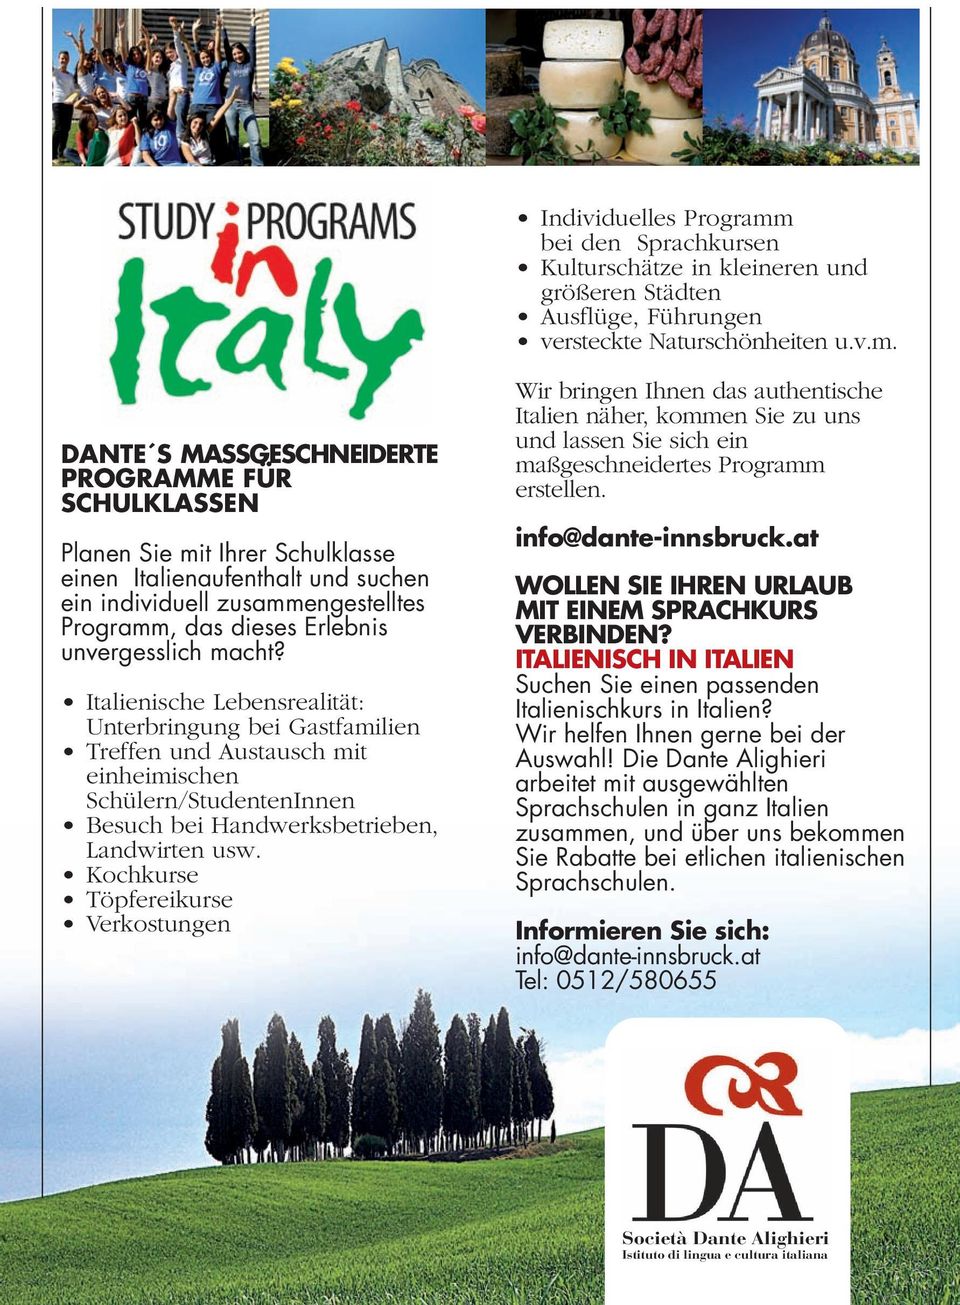 DANTE S MASSGESCHNEIDERTE PROGRAMME FÜR SCHULKLASSEN Planen Sie mit Ihrer Schulklasse einen Italienaufenthalt und suchen ein individuell zusammengestelltes Programm, das dieses Erlebnis unvergesslich